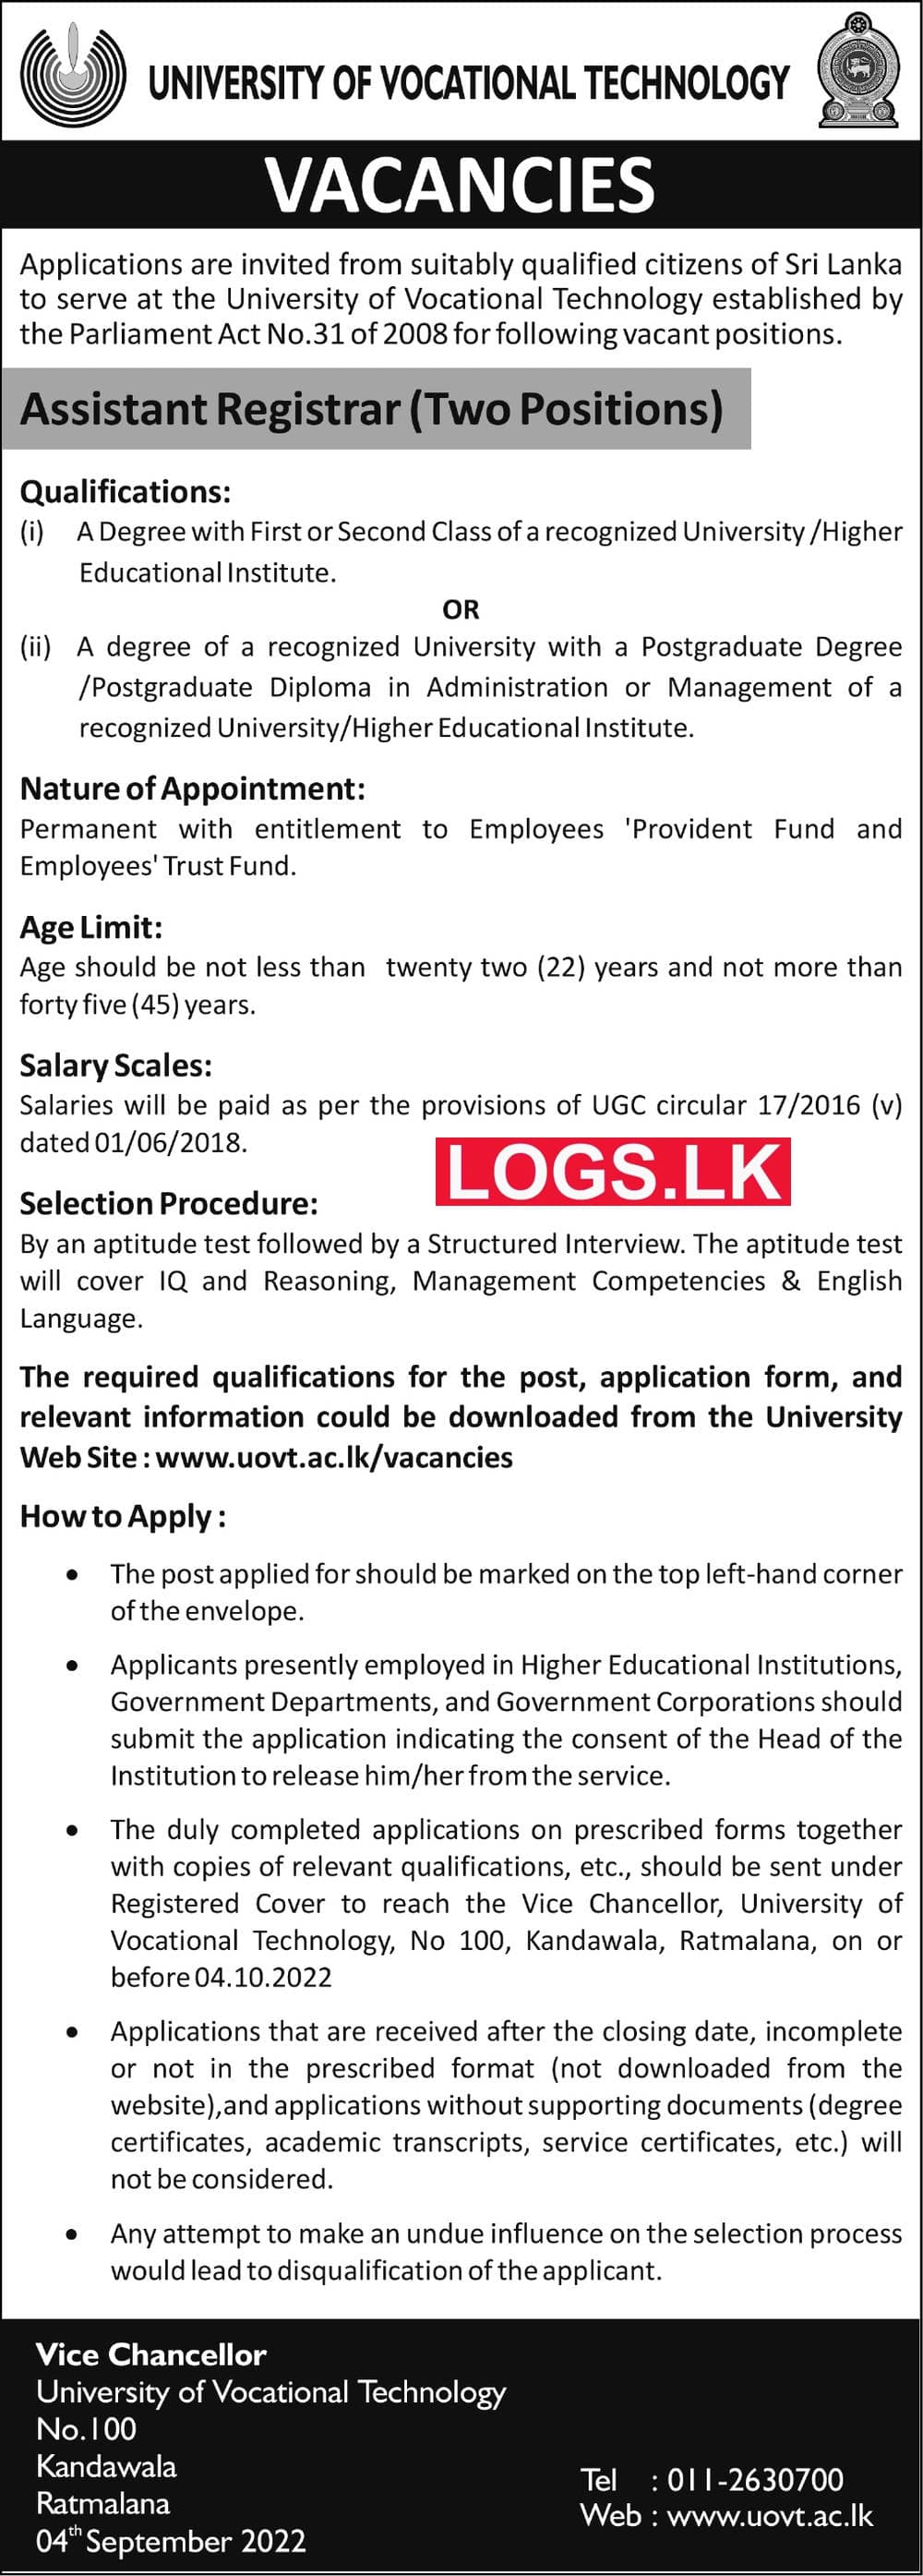 Assistant Registrar Job Vacancies in UNIVOTECH Details, Application Form